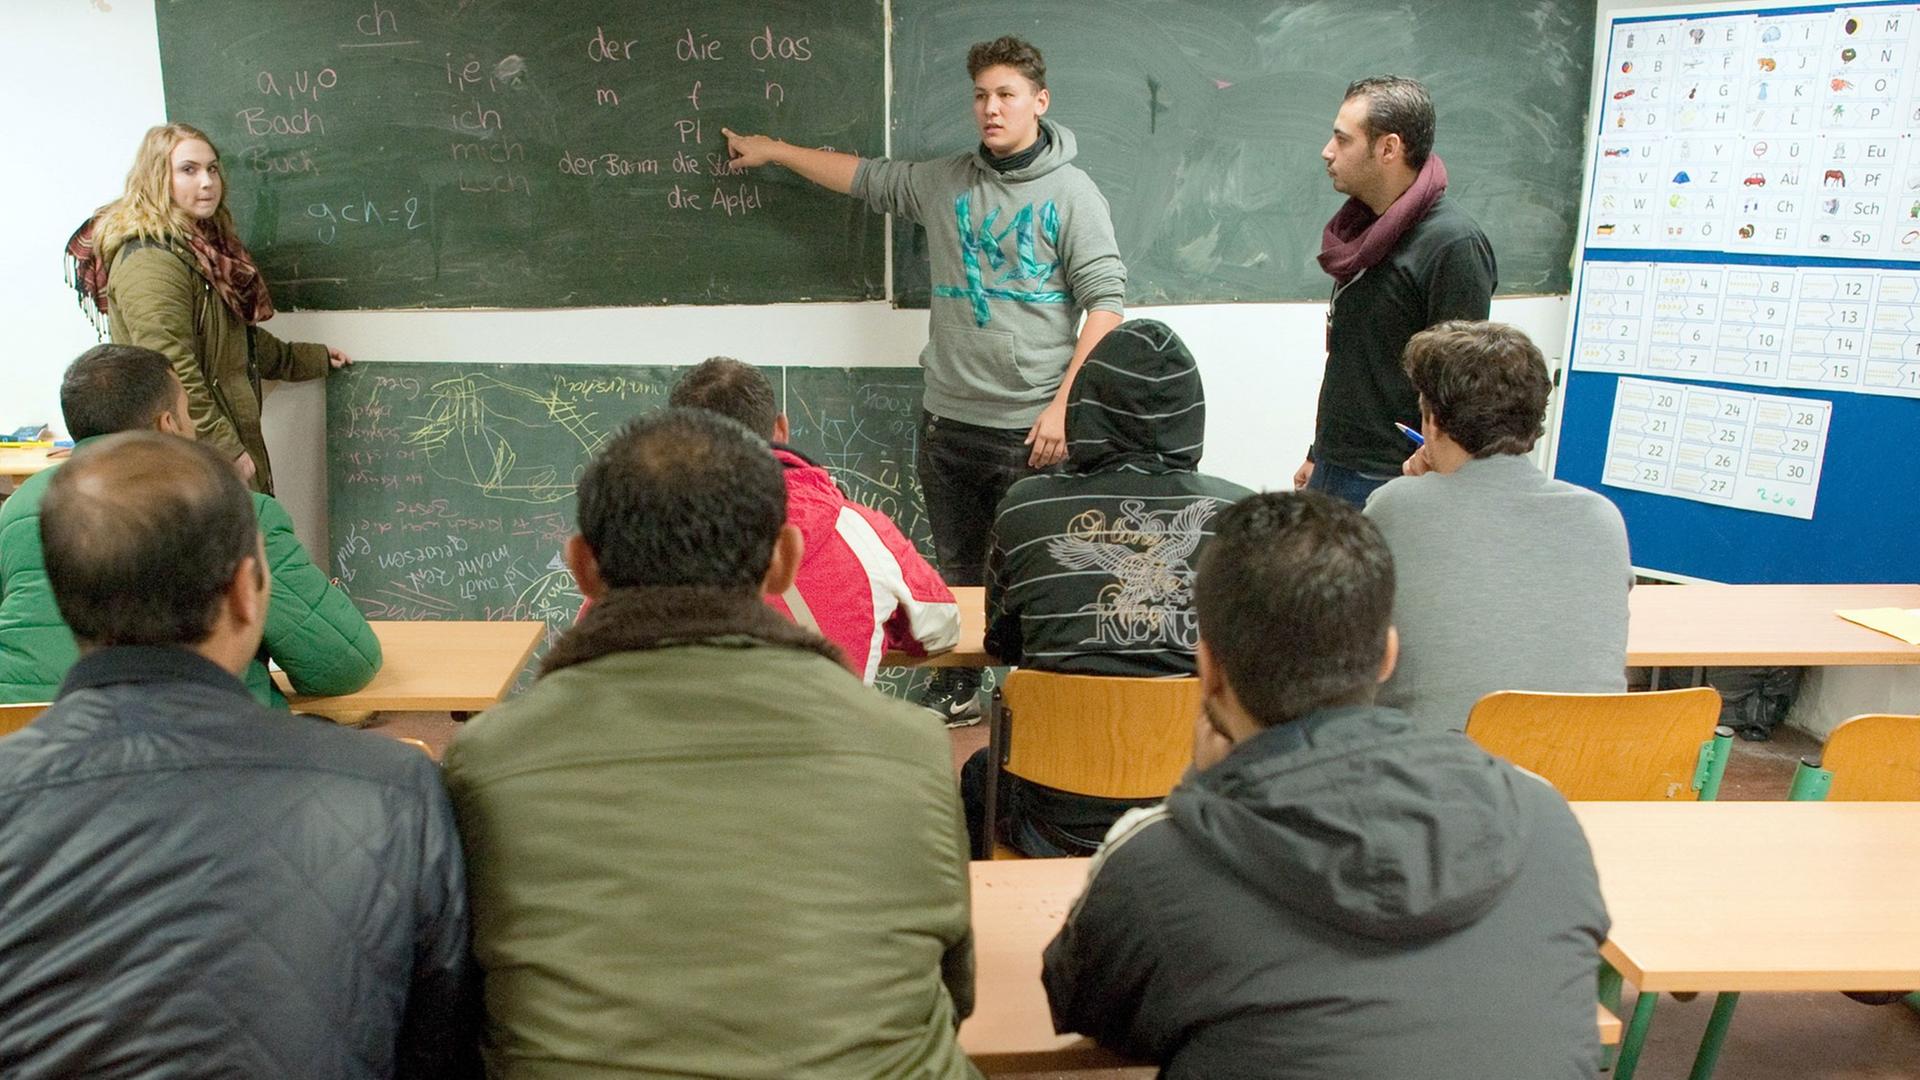 Syrer lernen Deutsch in Eisenhüttenstadt.